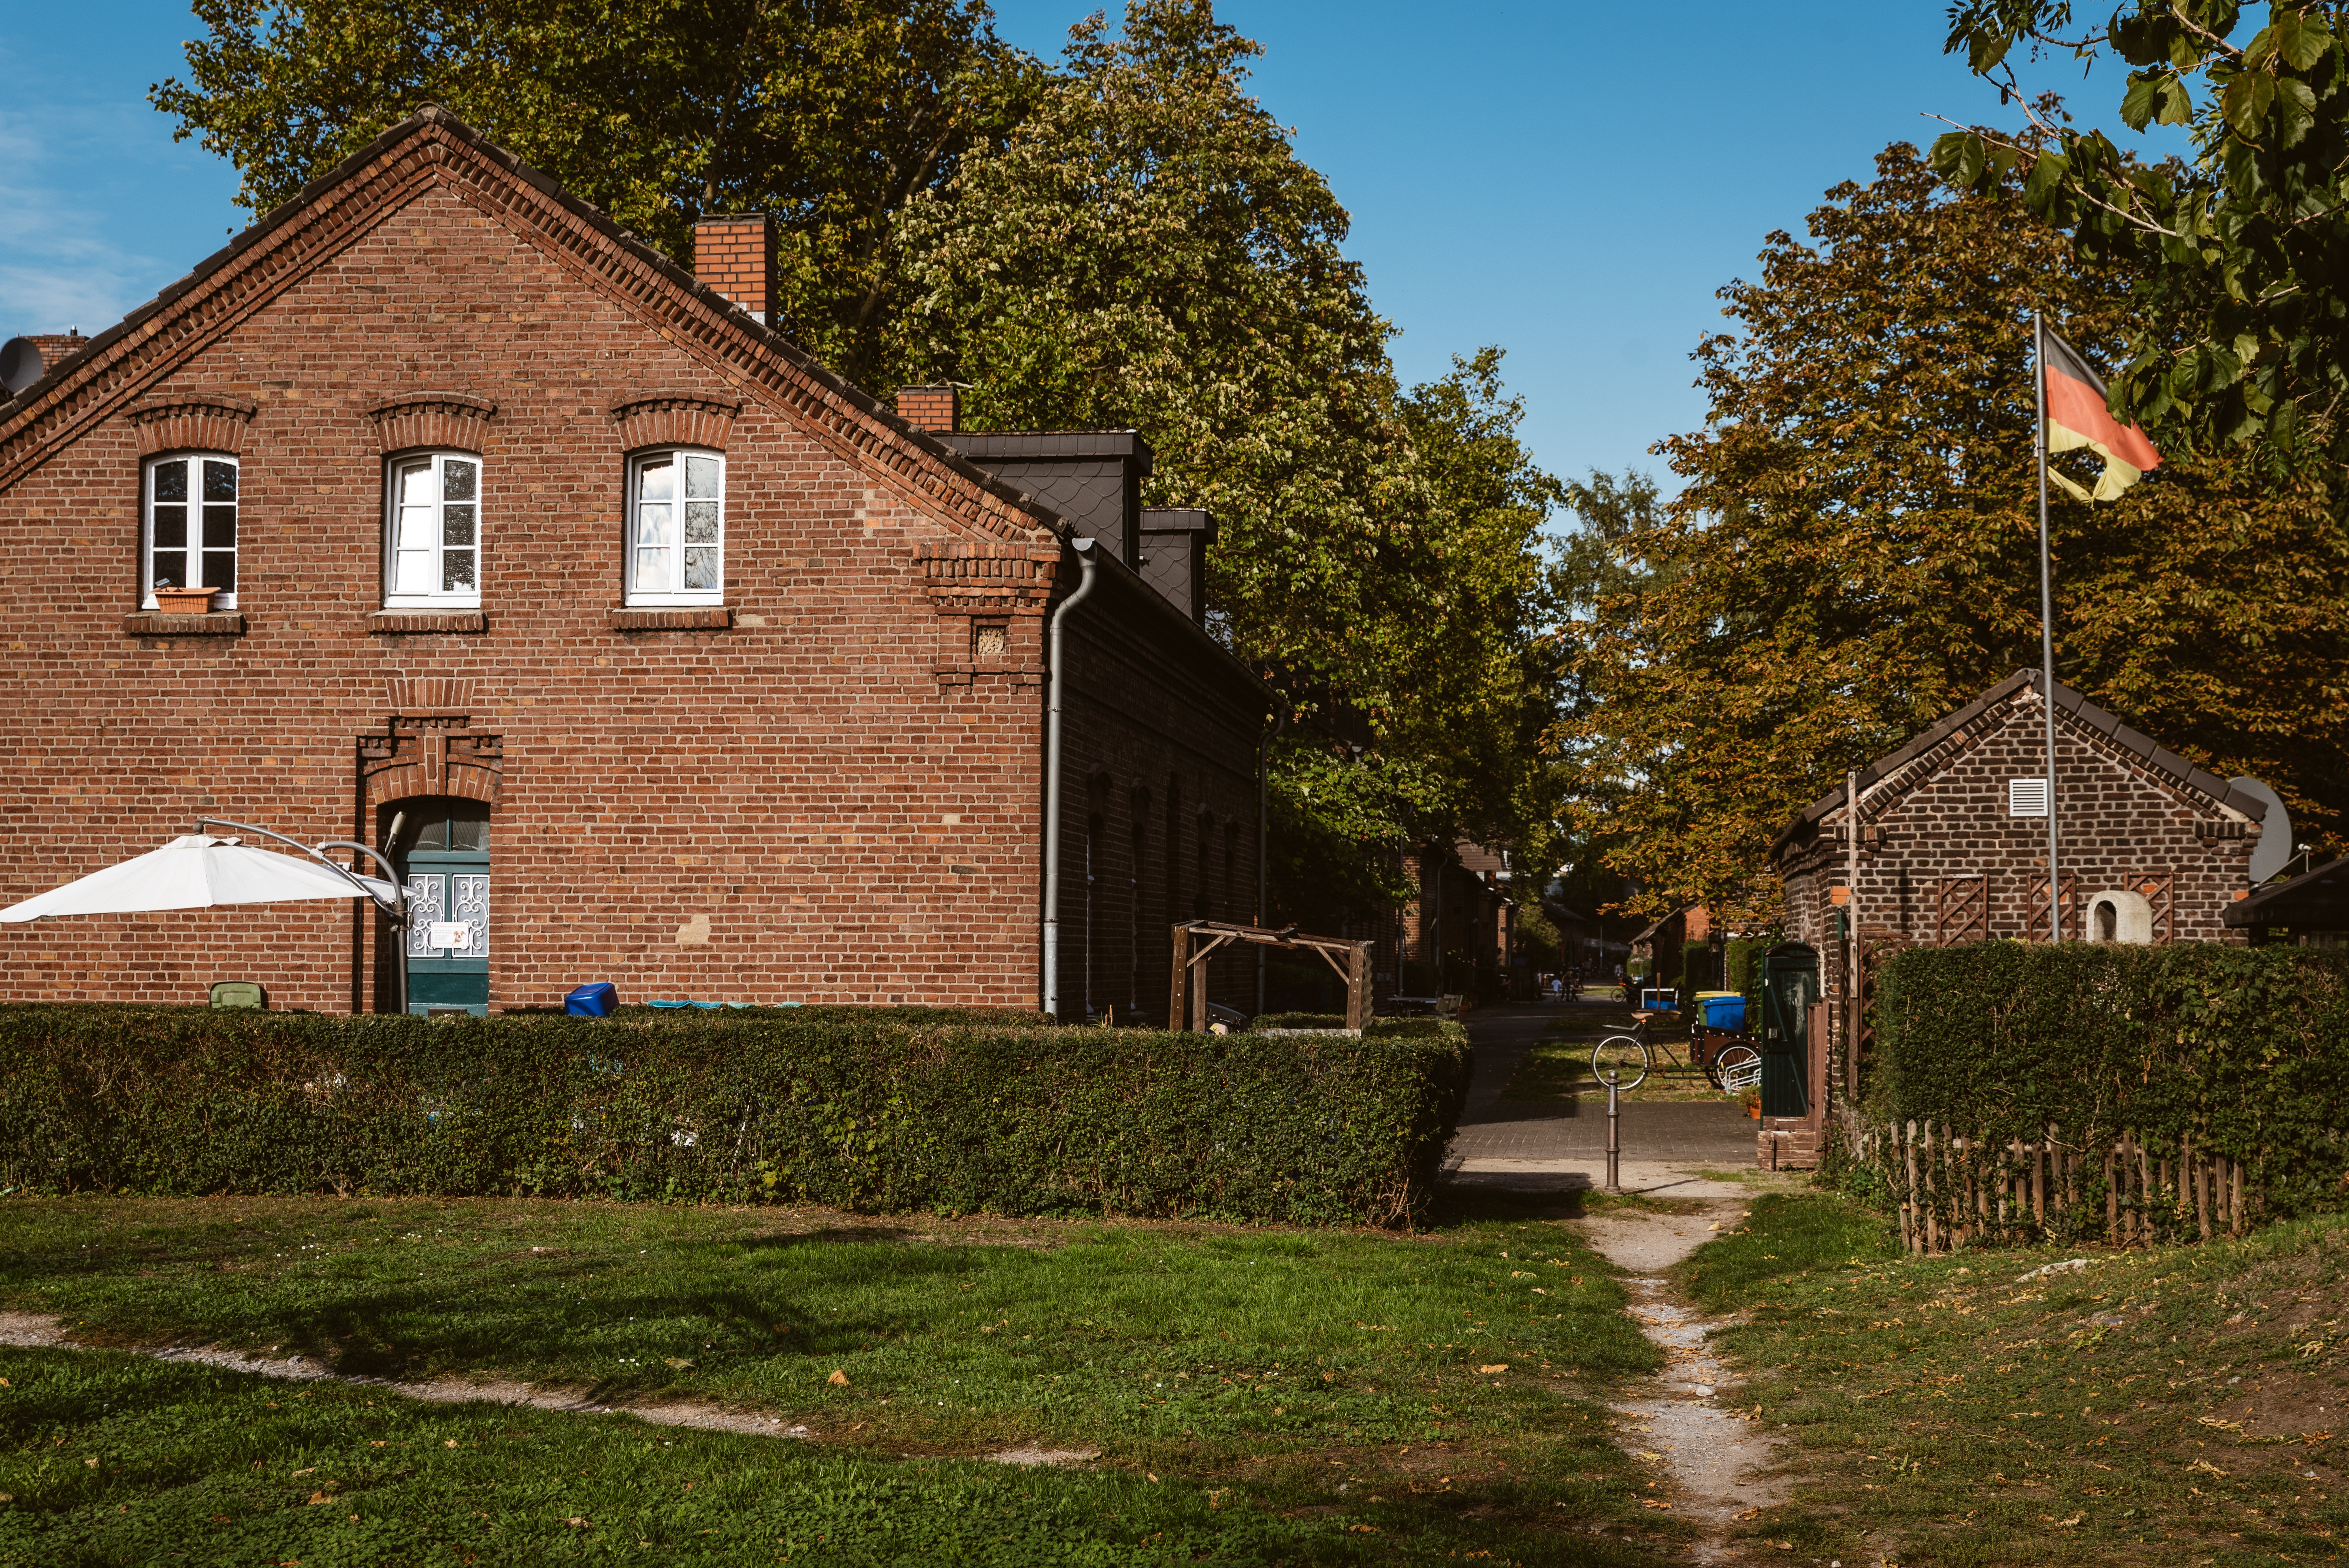 Die Hüttengewerkschaft Jacobi, Haniel und Huyssen gründete die Siedlung Eisenheim ab 1846 für ihre Belegschaft.